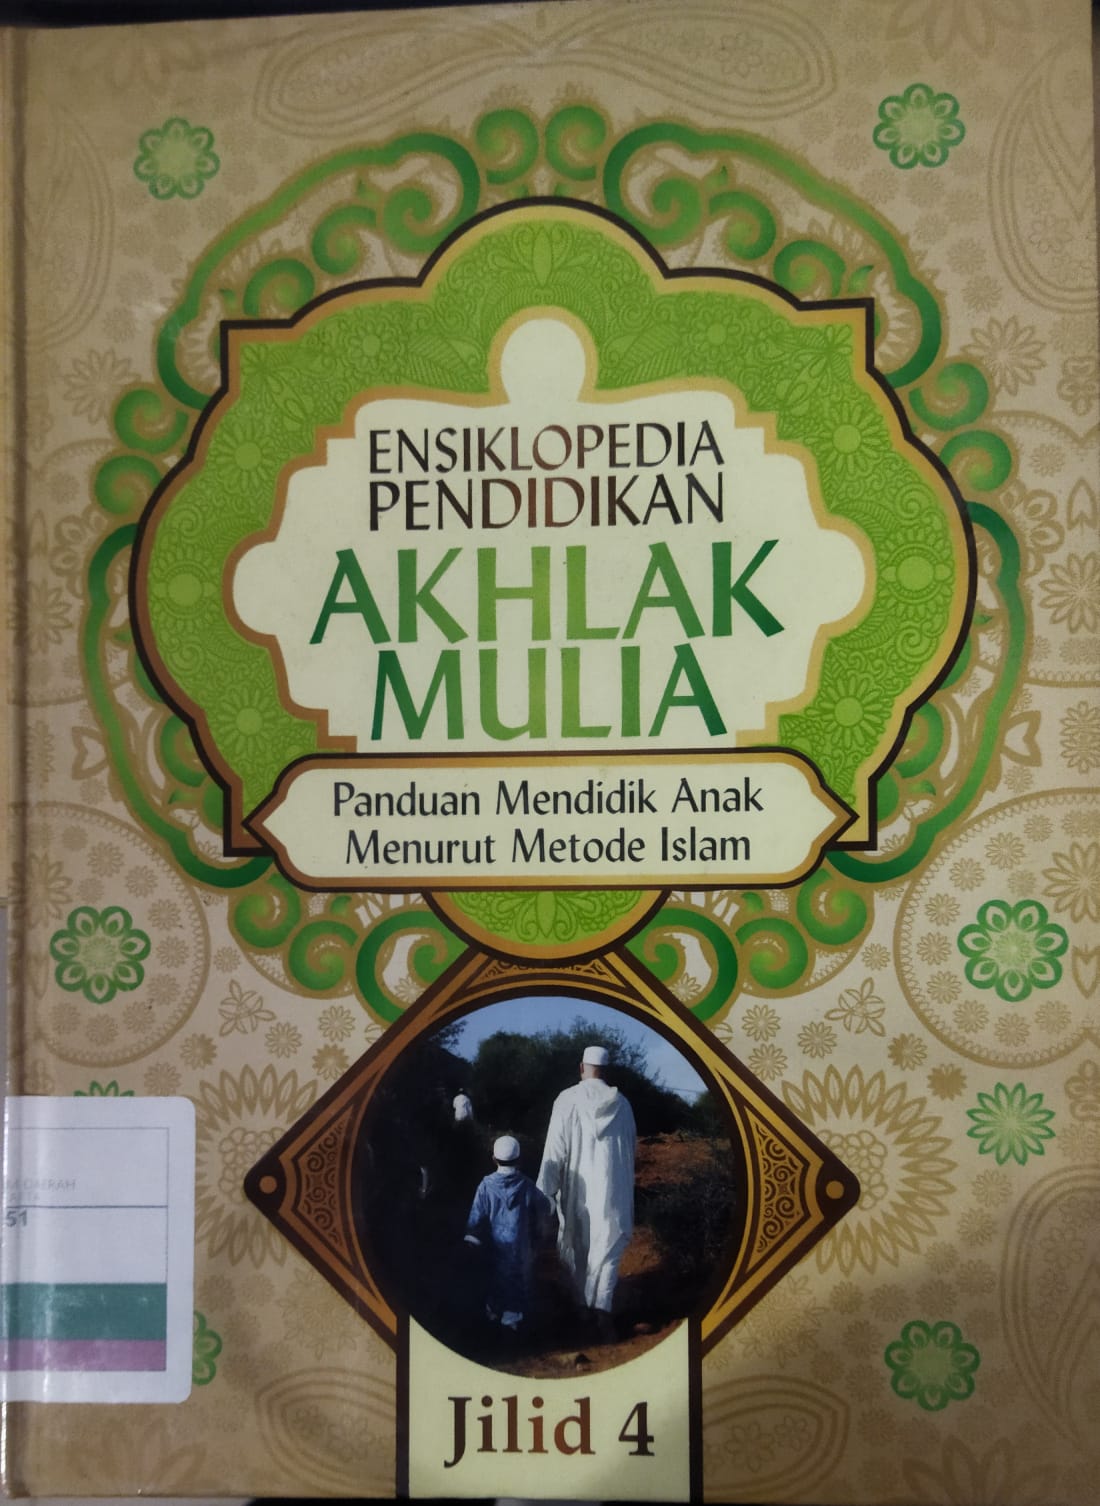 Ensiklopedia pendidikan akhlak mulia jilid 4 :  Panduan mendidik anak menurut metode islam